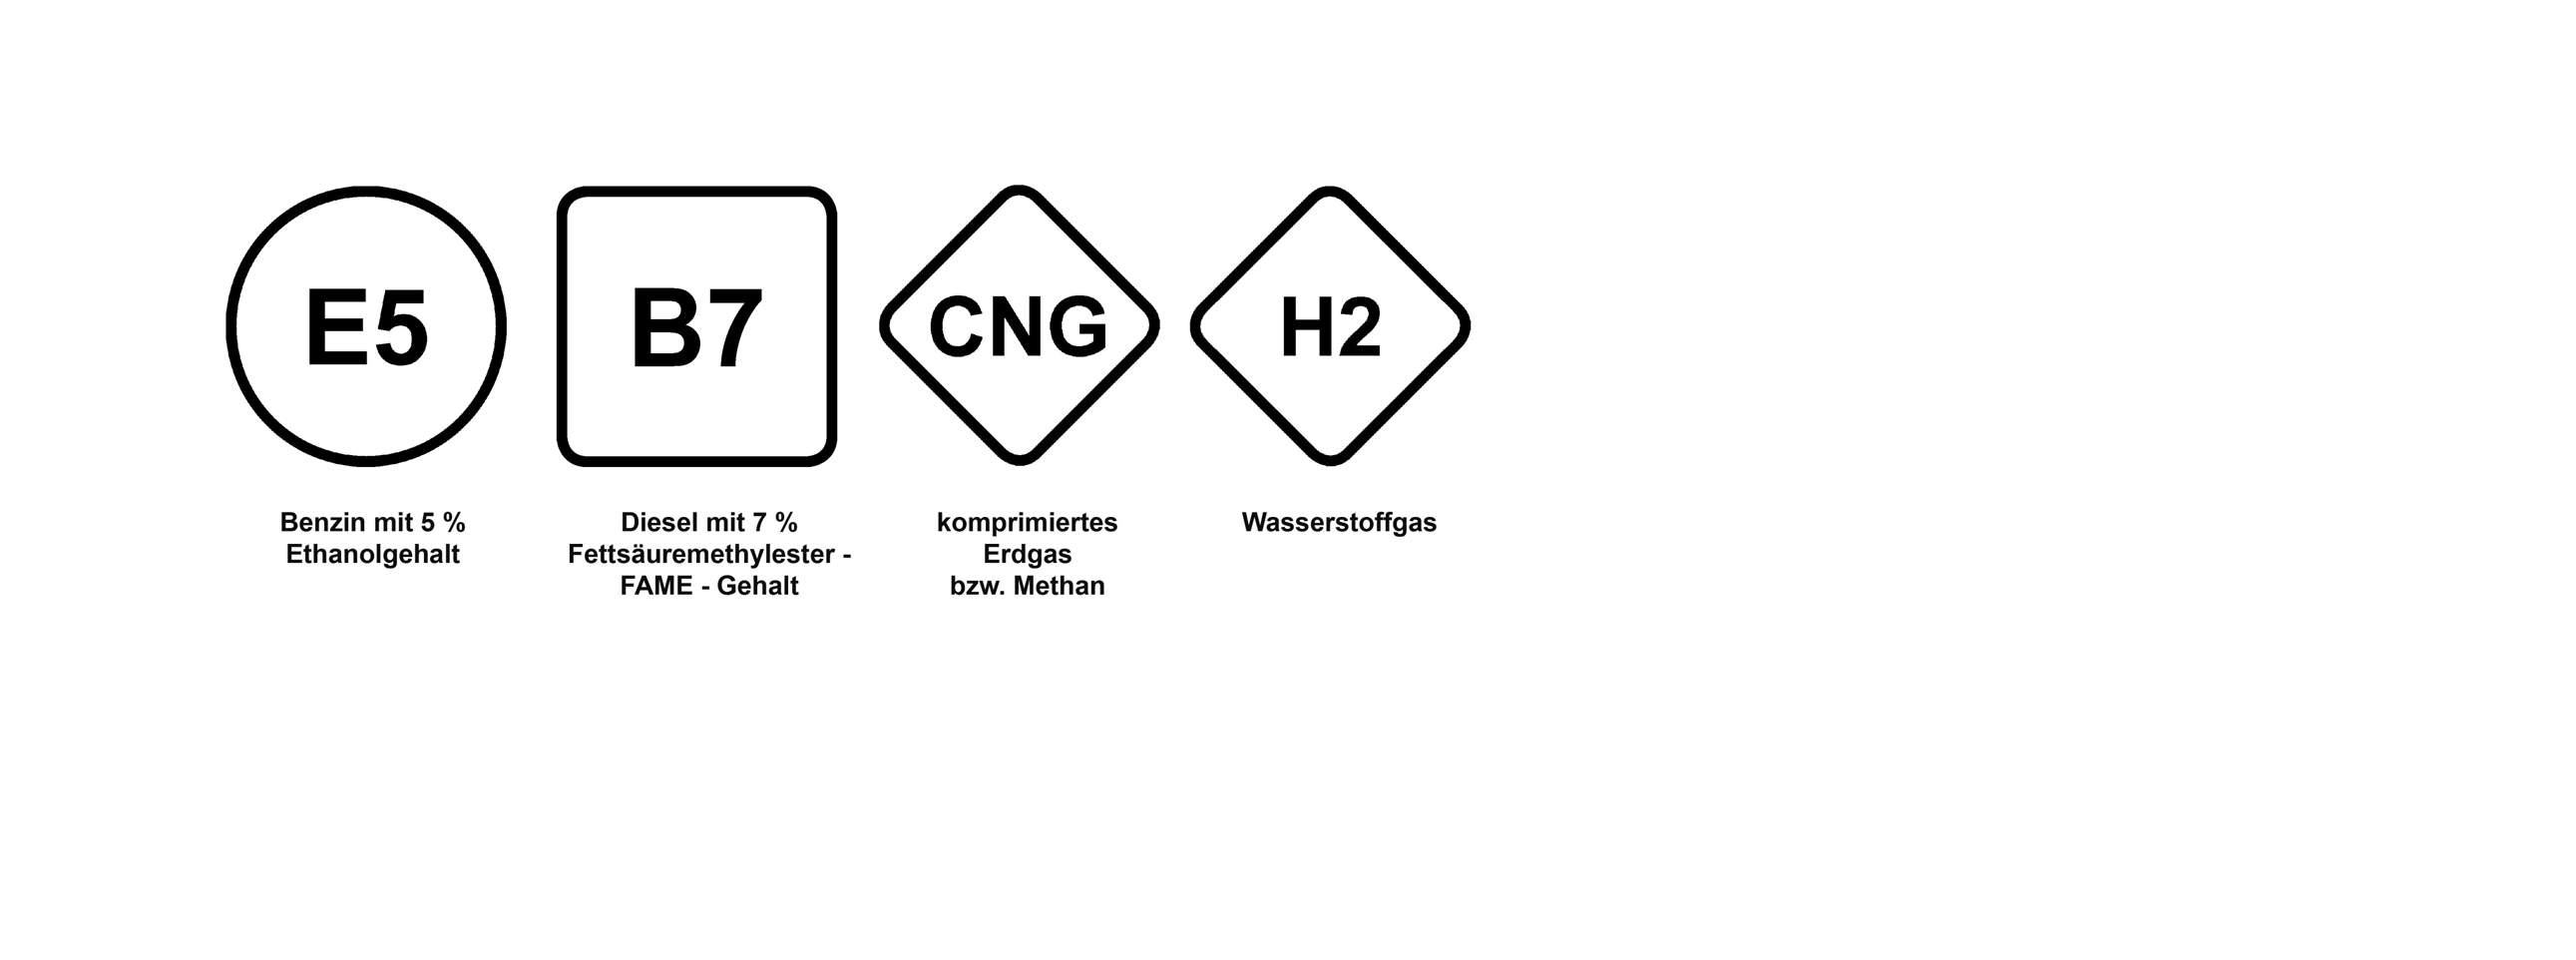 Kennzeichnung von Kraftstoffen